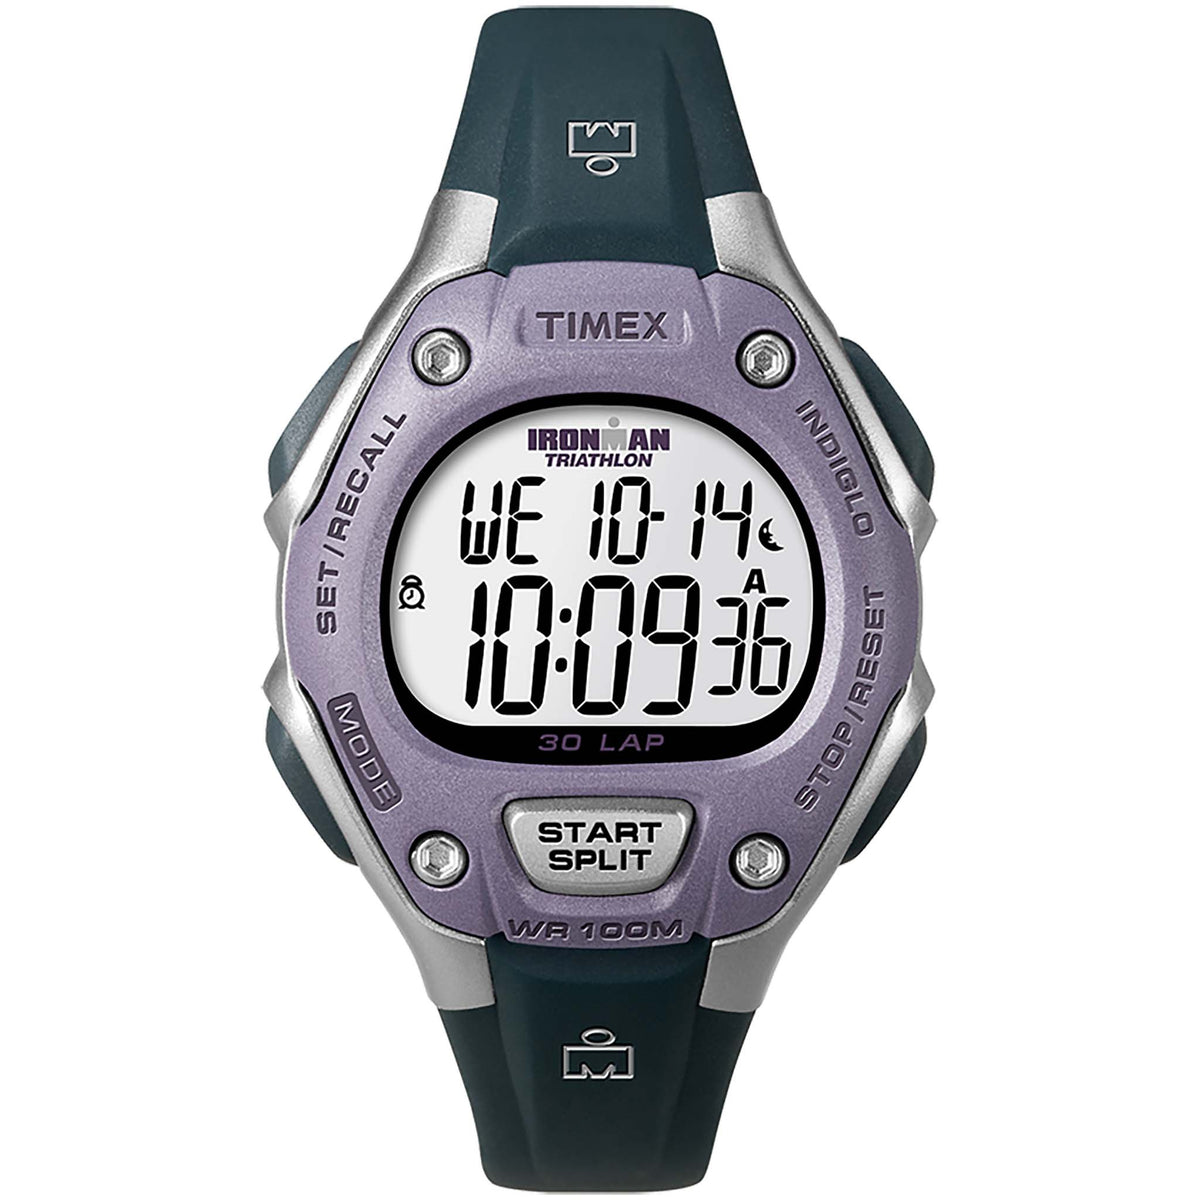 Timex Ironman Classic 30 mid-size montre de sport argent violet